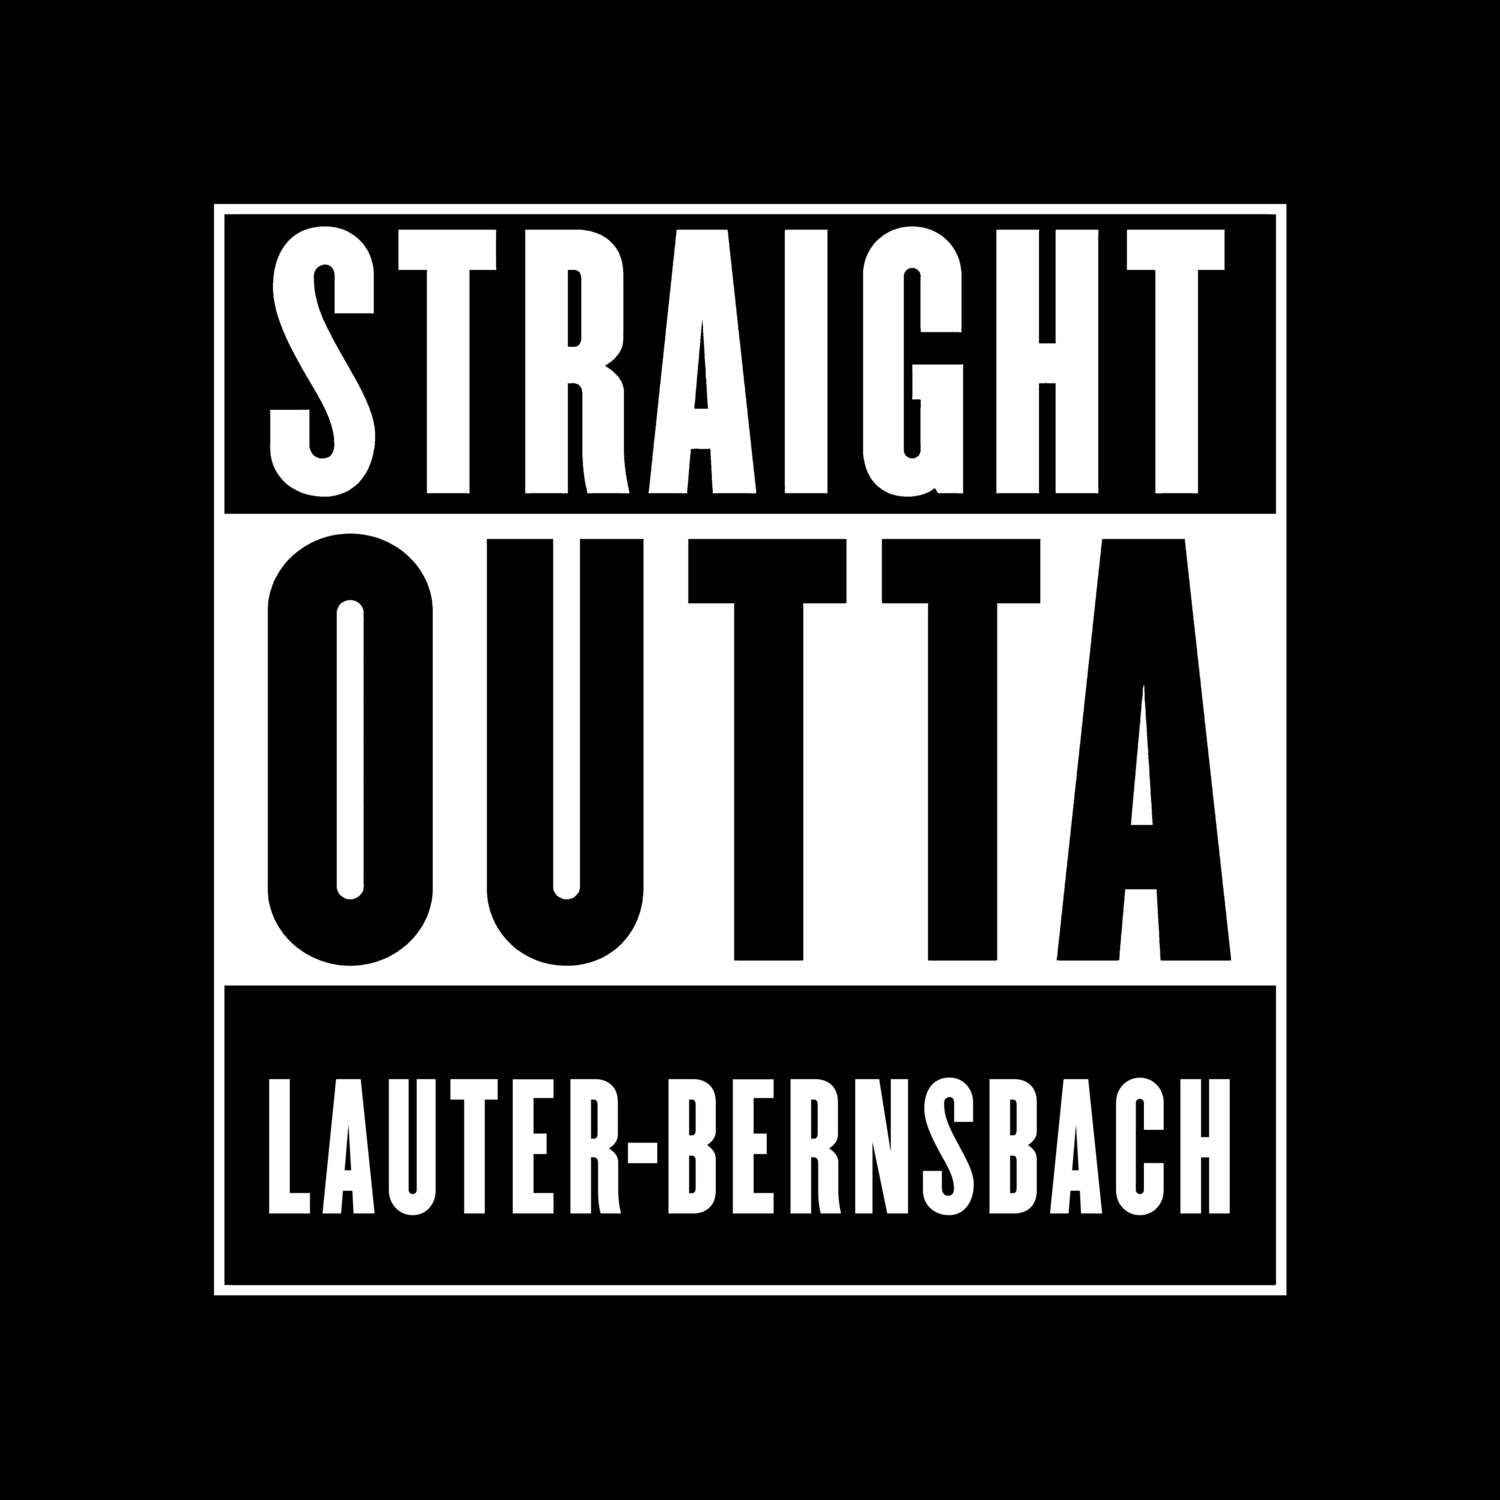 Lauter-Bernsbach T-Shirt »Straight Outta«